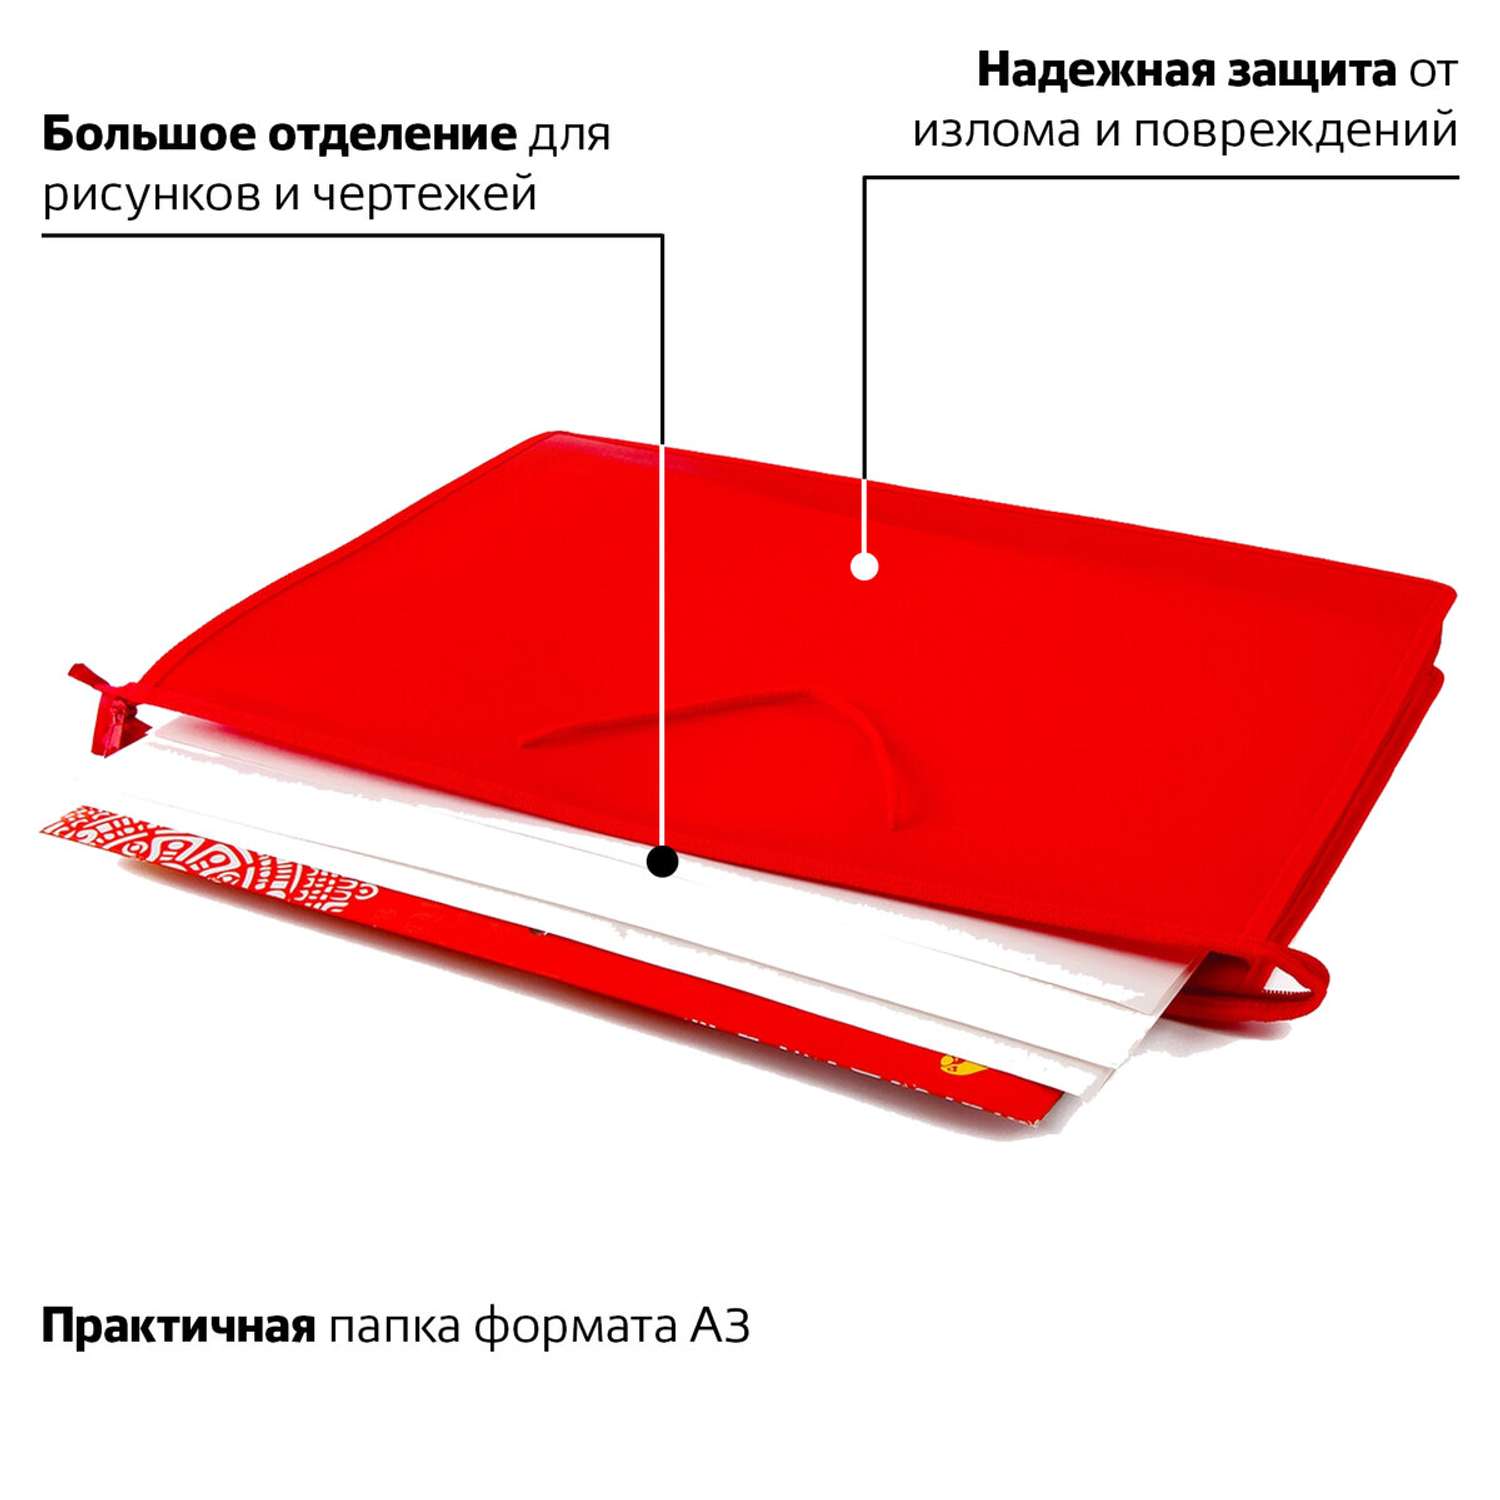 Папка Пифагор для рисунков и чертежей А3 ручки-шнурок красная - фото 2